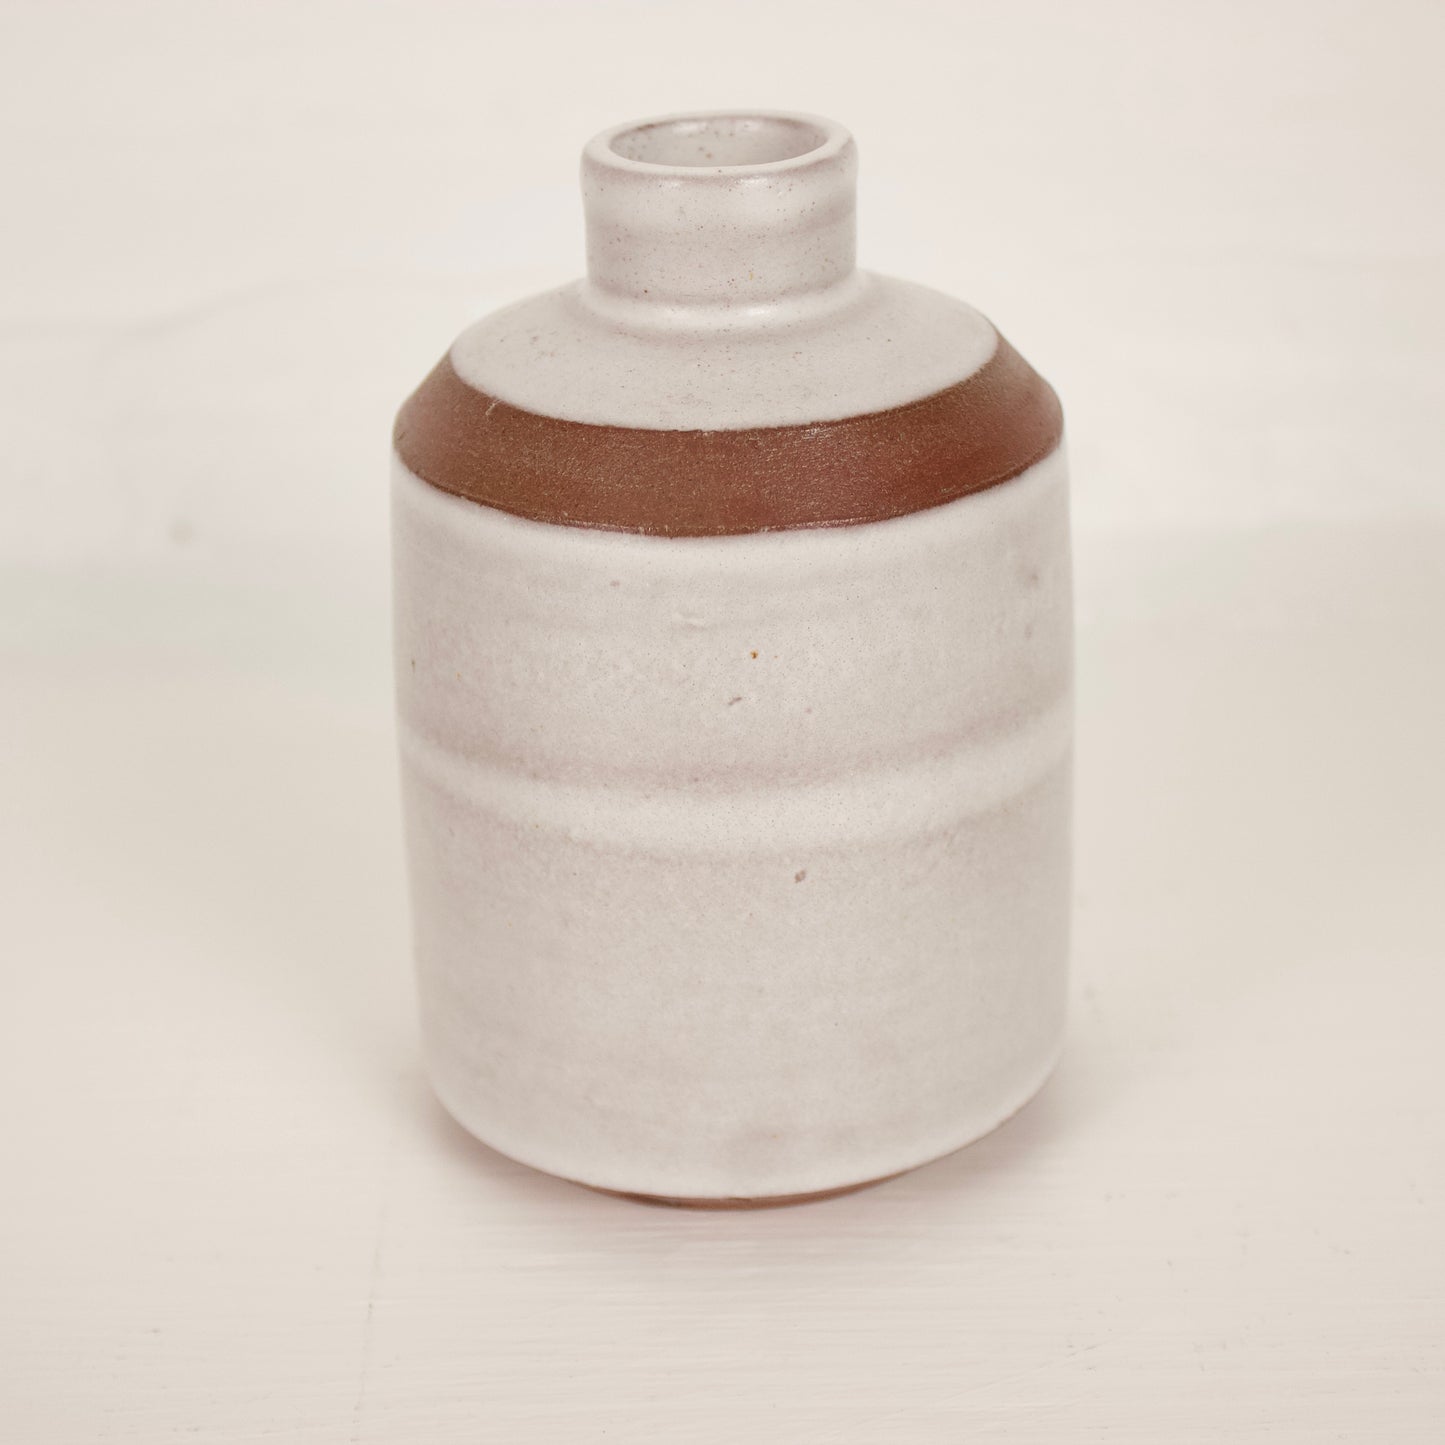 Handmade Ceramic Vase or Bottle